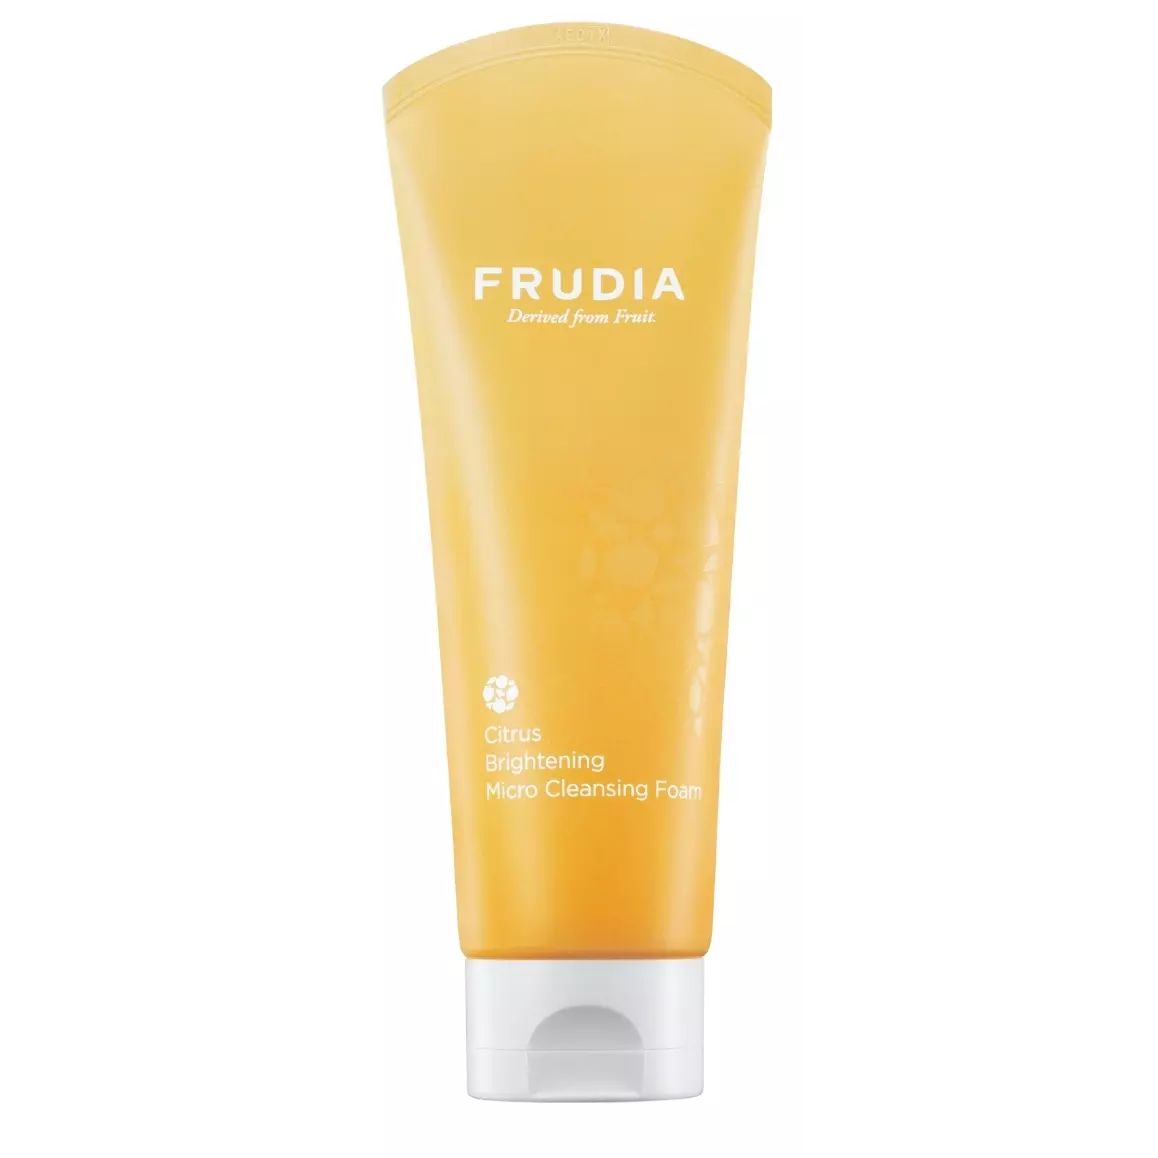 Пенка для умывания FRUDIA Citrus Brightening Micro Cleansing Foam для сияния кожи, 145 мл урологические прокладки для женщин 14 шт molimed premium micro